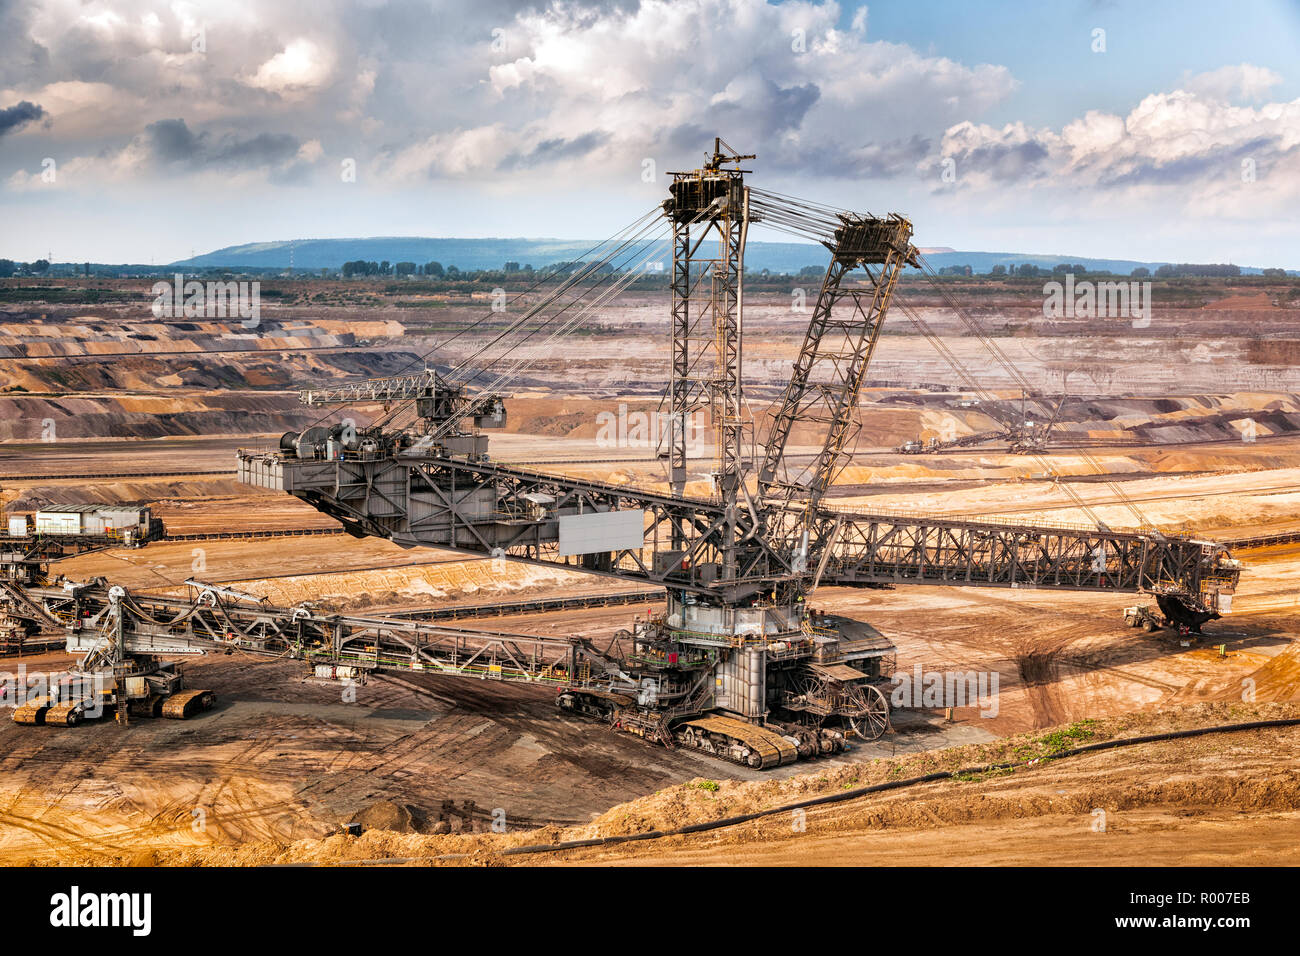 Equipos de minería del carbón marrón en una mina a cielo abierto. Foto de stock